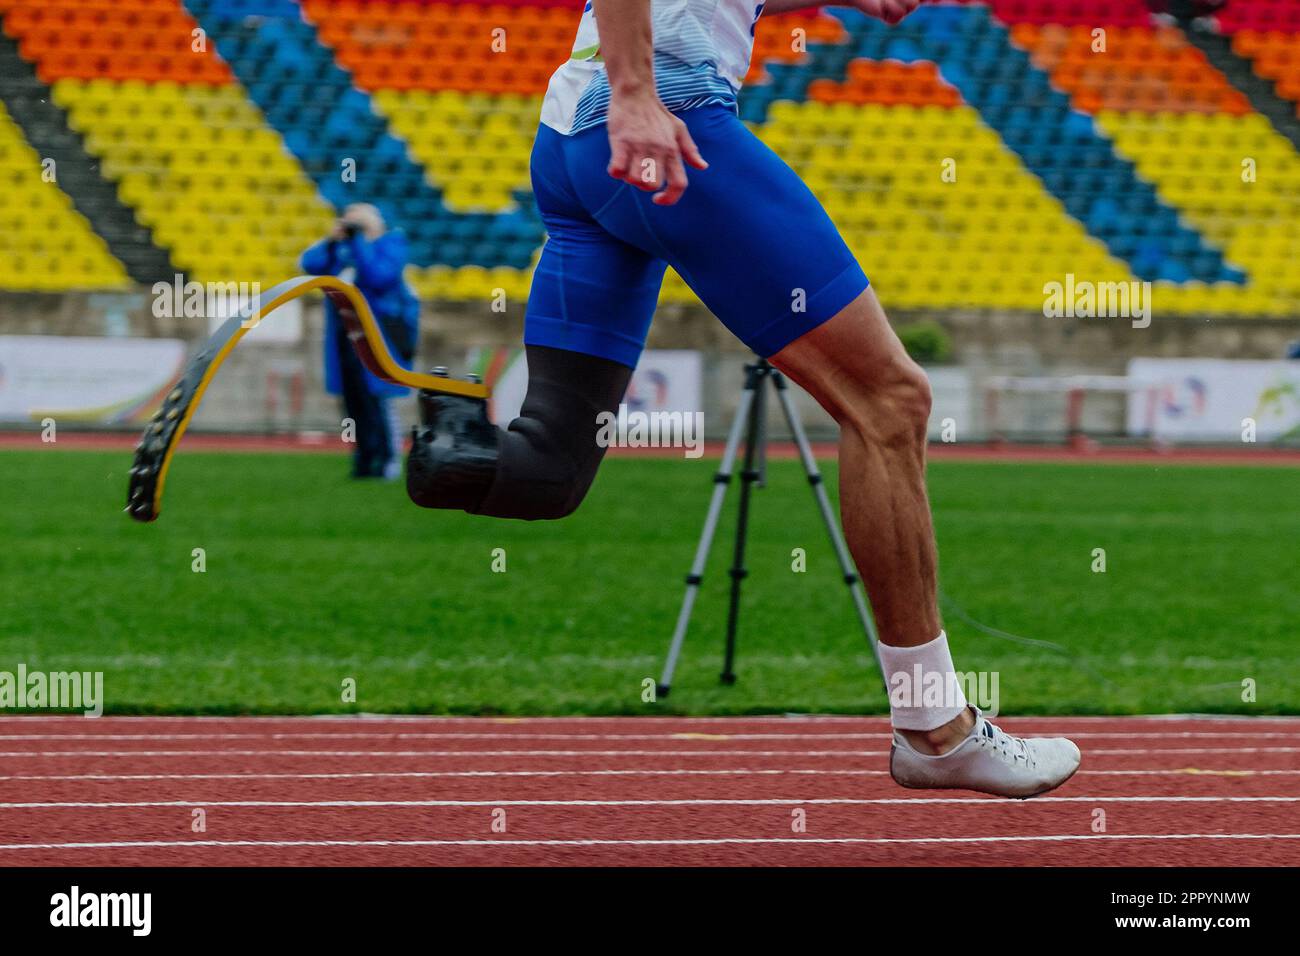 athlète parasportif masculin sur un stade de course de prothèse, championnats d'athlétisme para d'été Banque D'Images